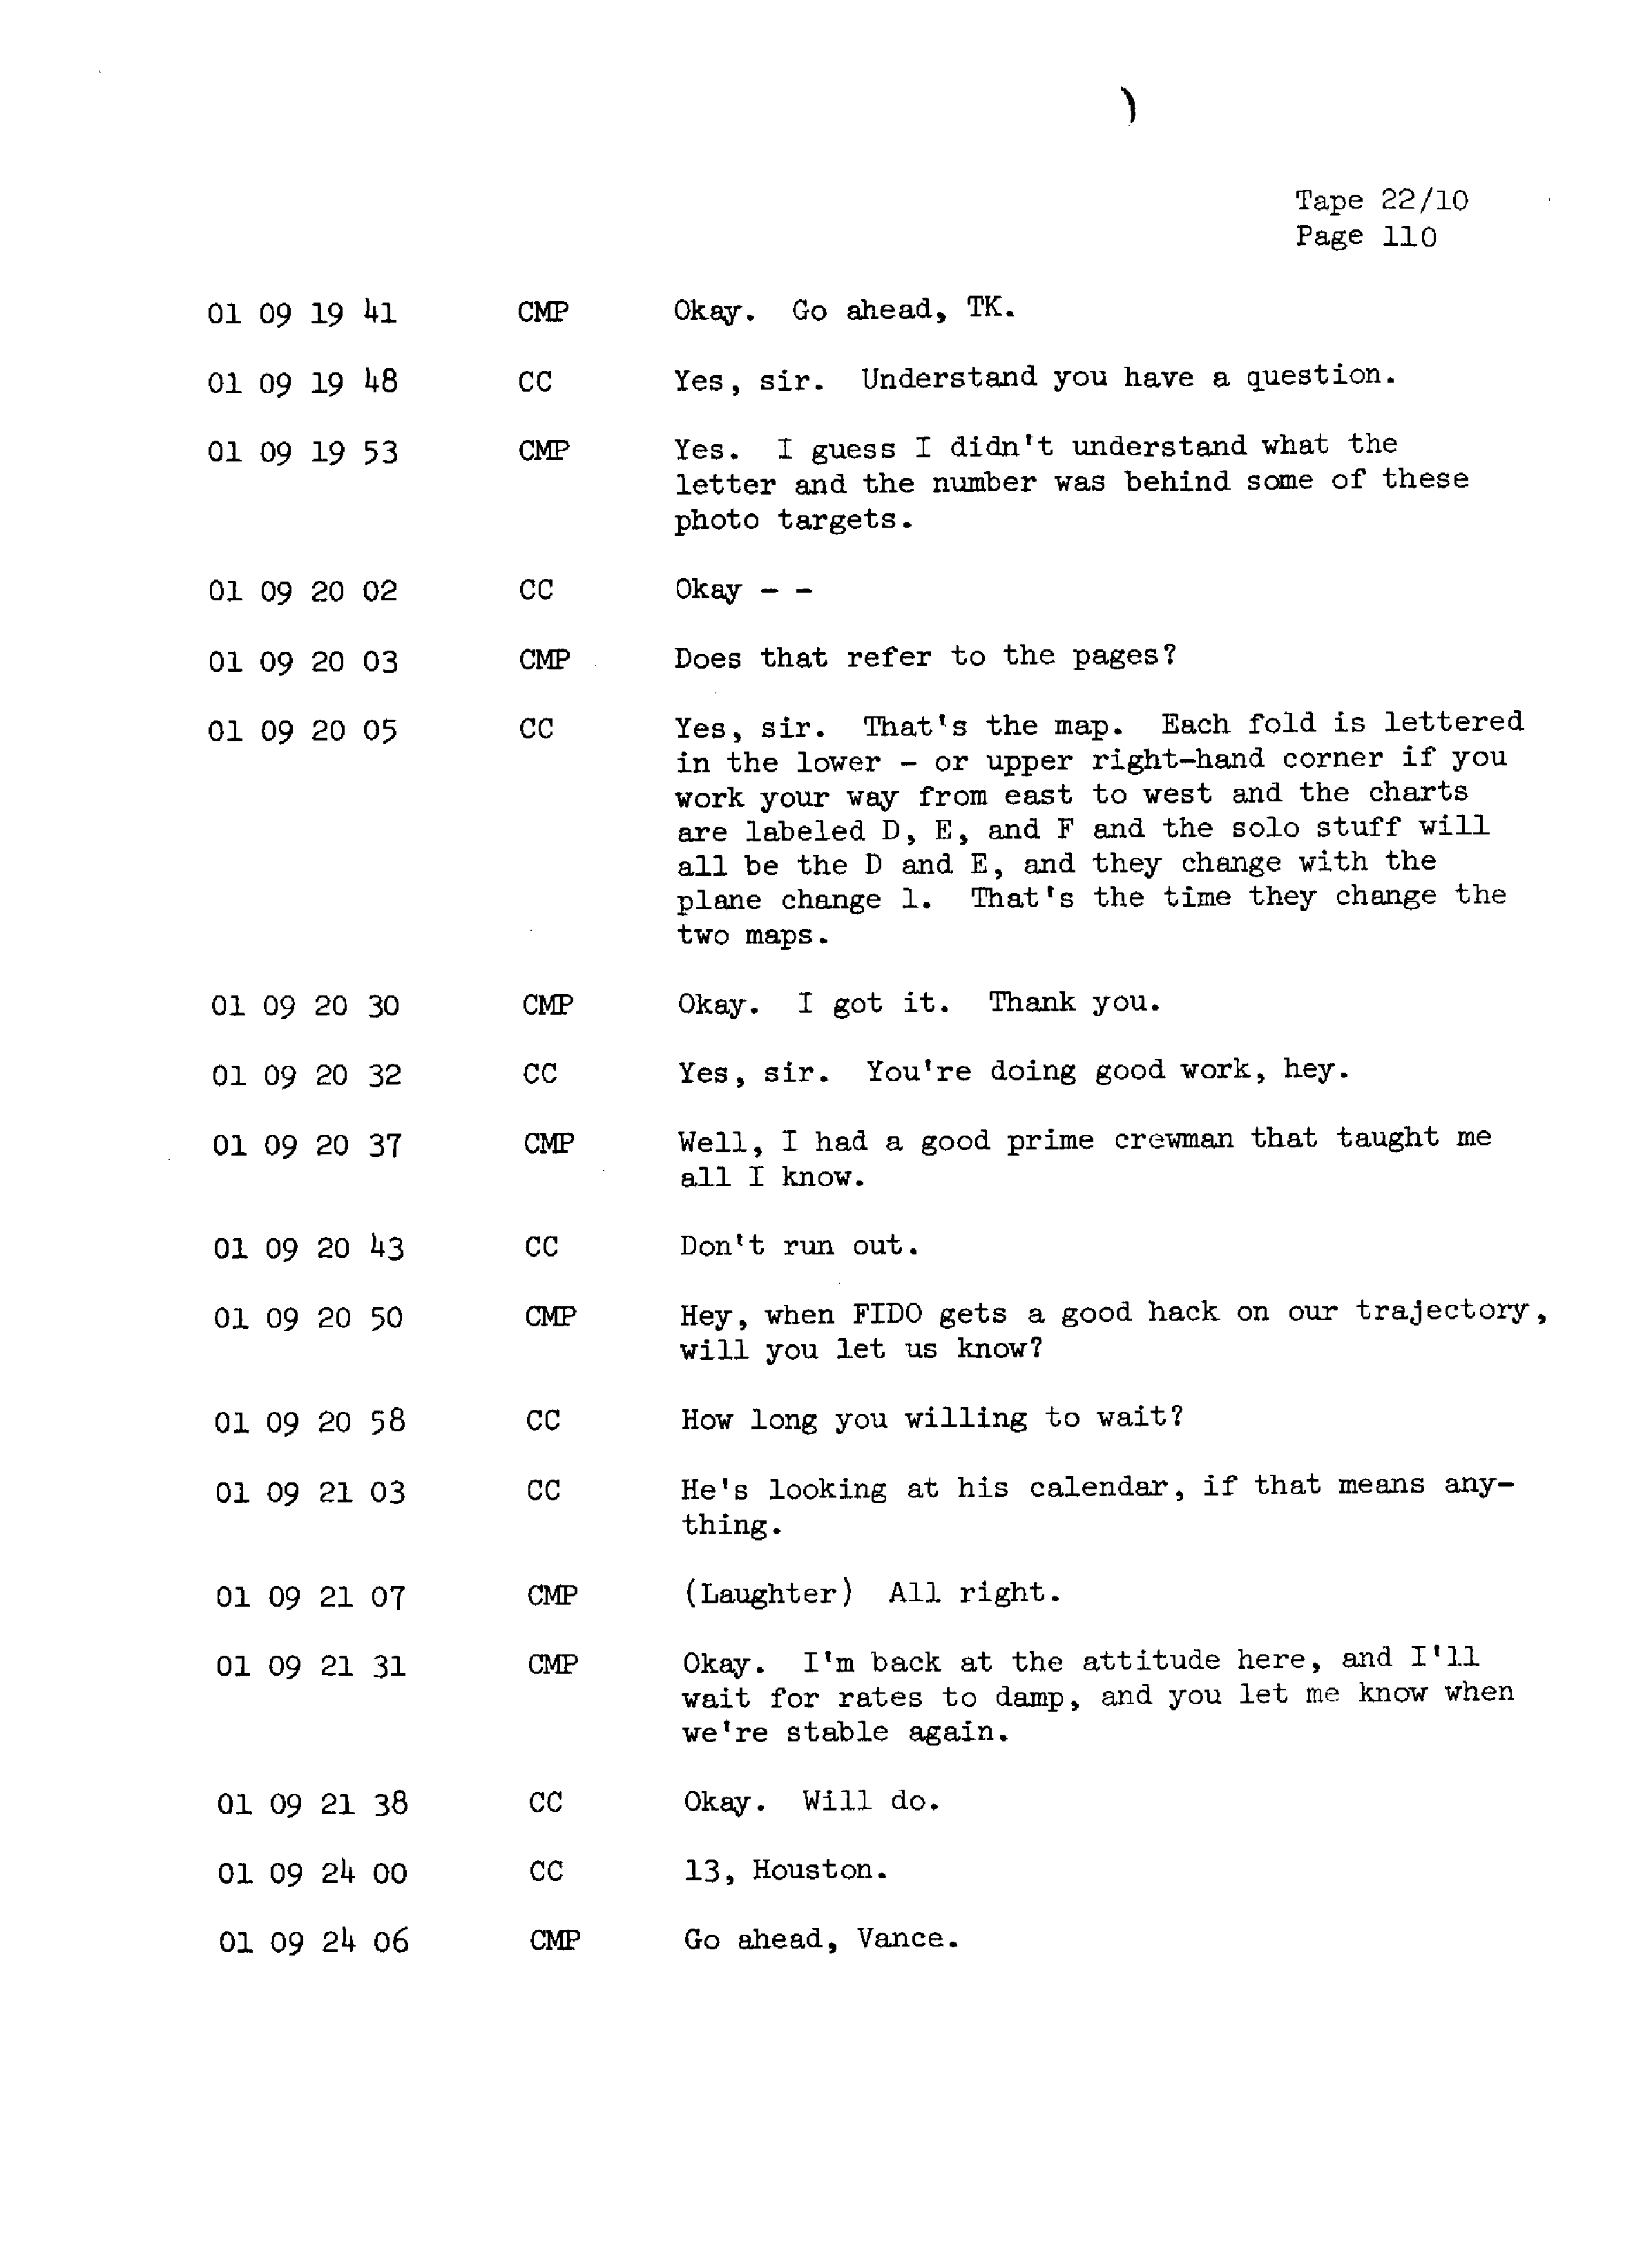 Page 117 of Apollo 13’s original transcript